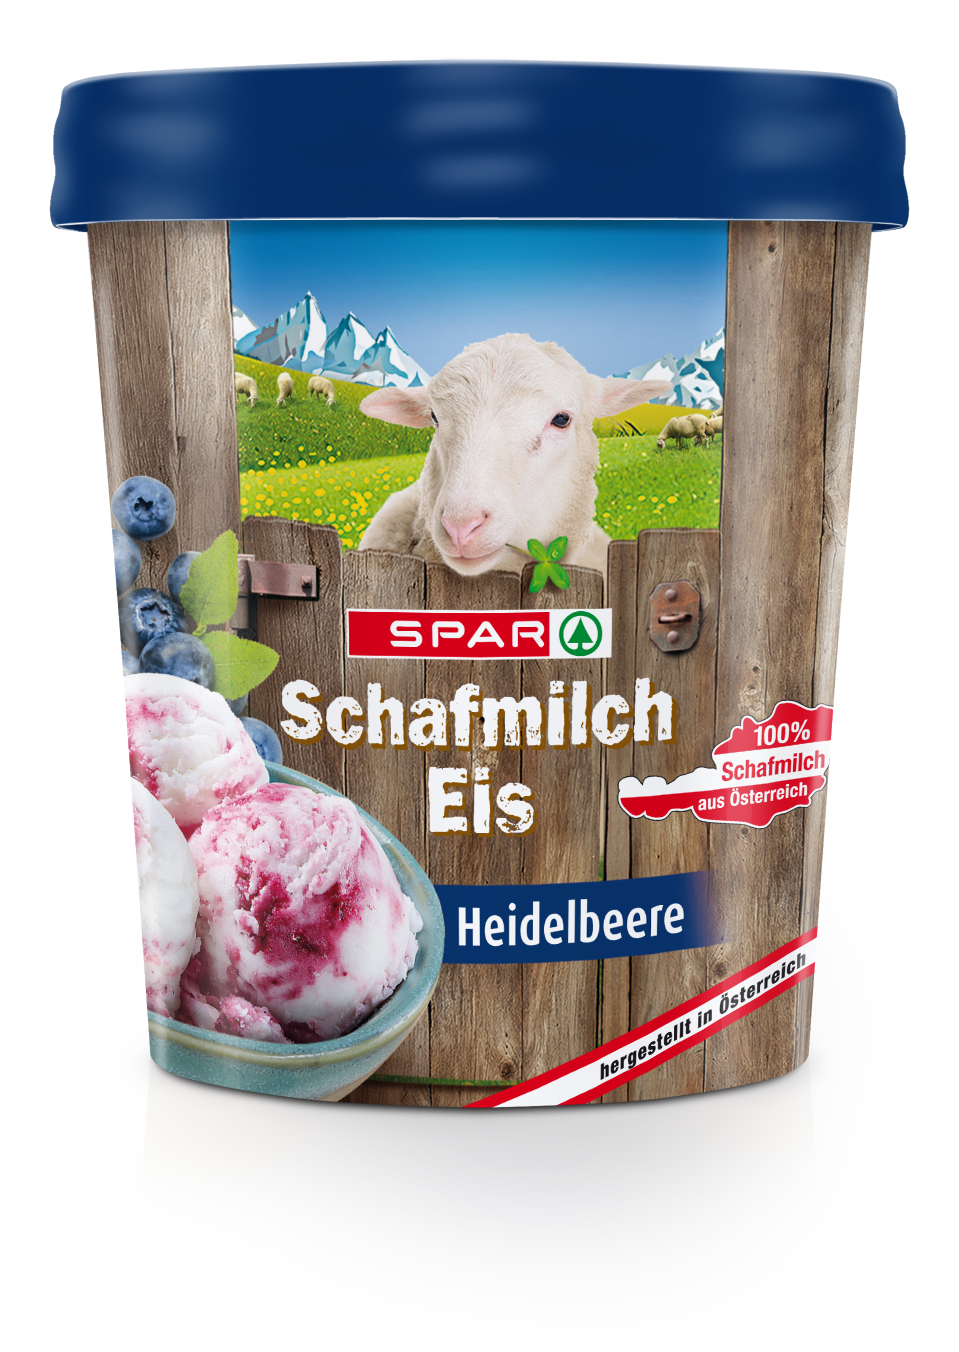 Schafmilch-Eis-3Ds-SPAR_Schafmilcheis_Heidelbeere_2018